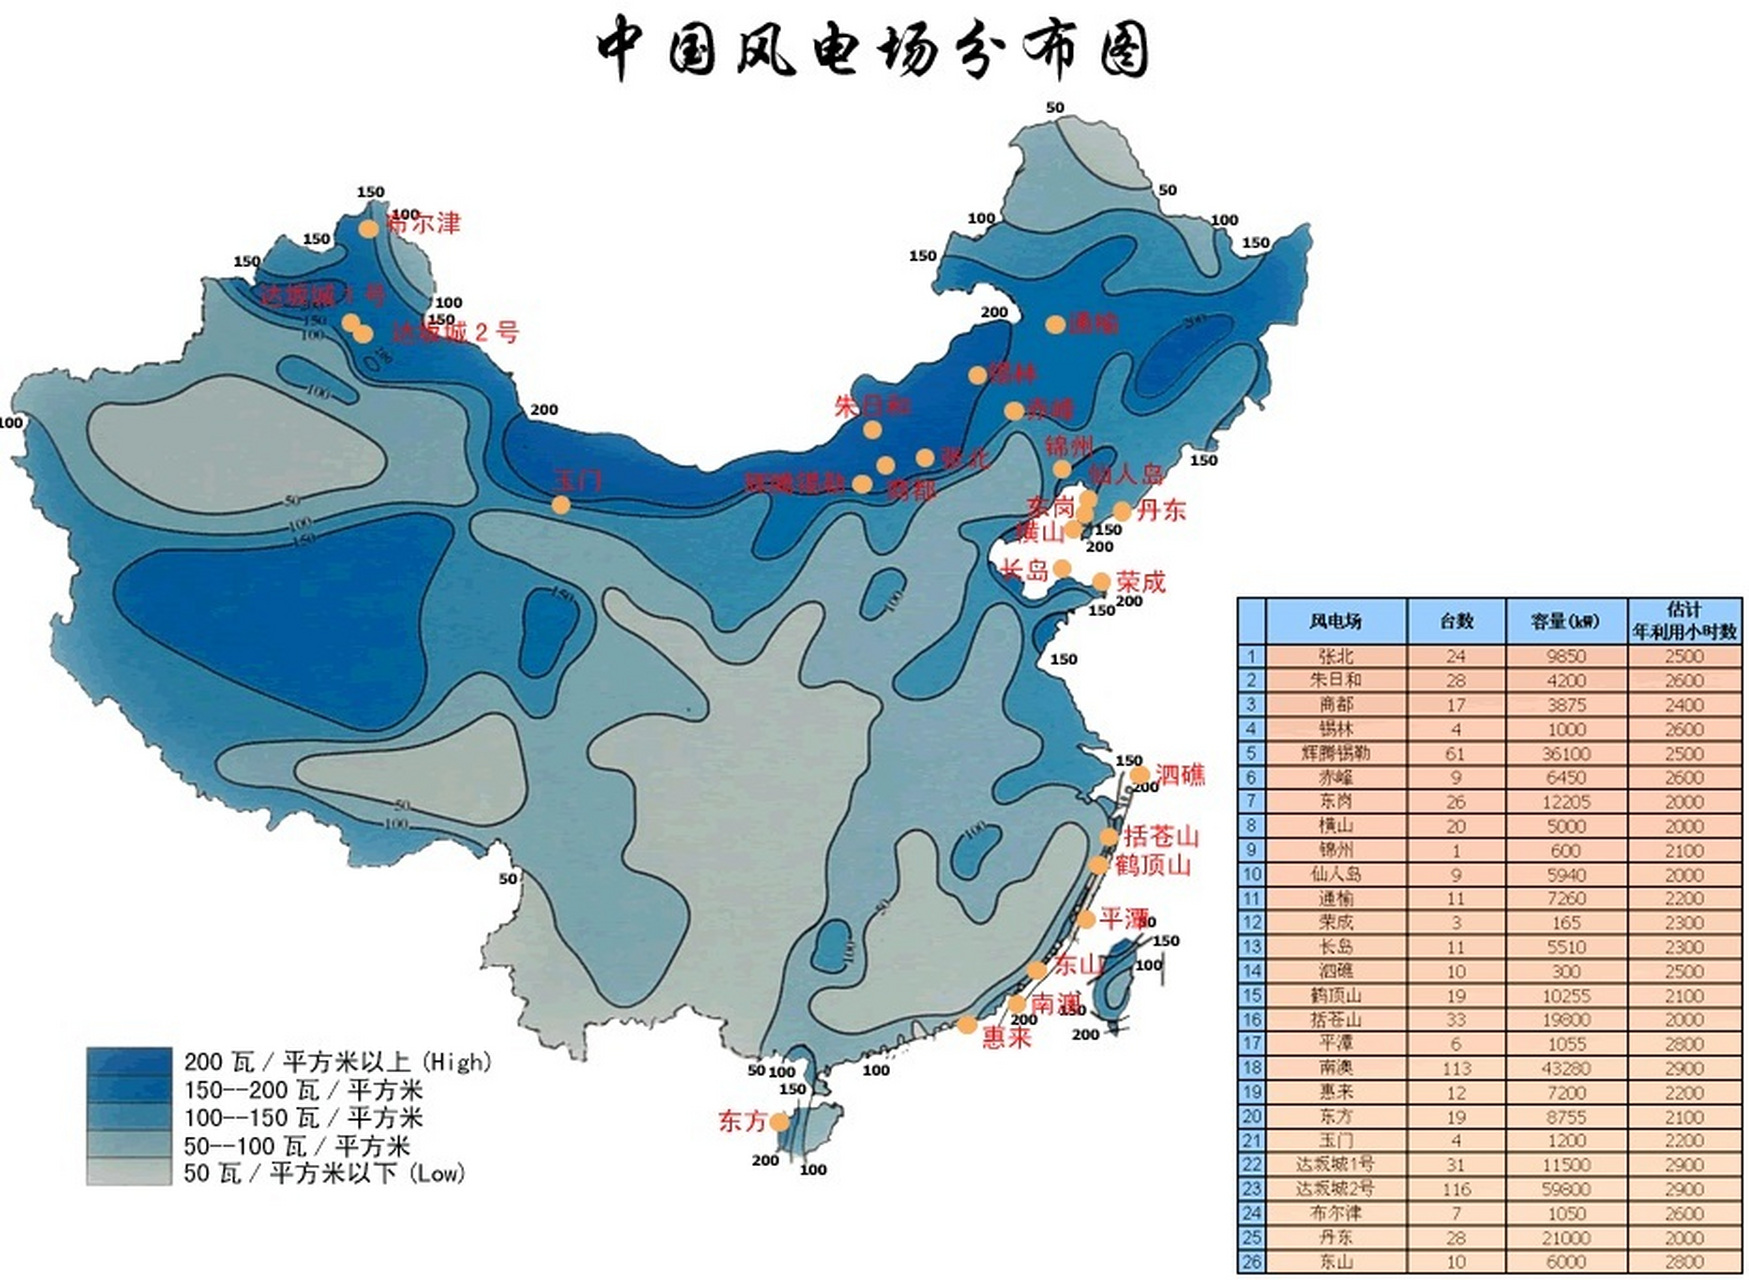 中国主要风电场分布图 我国的风能资源主要分布在东南沿海地区和西北